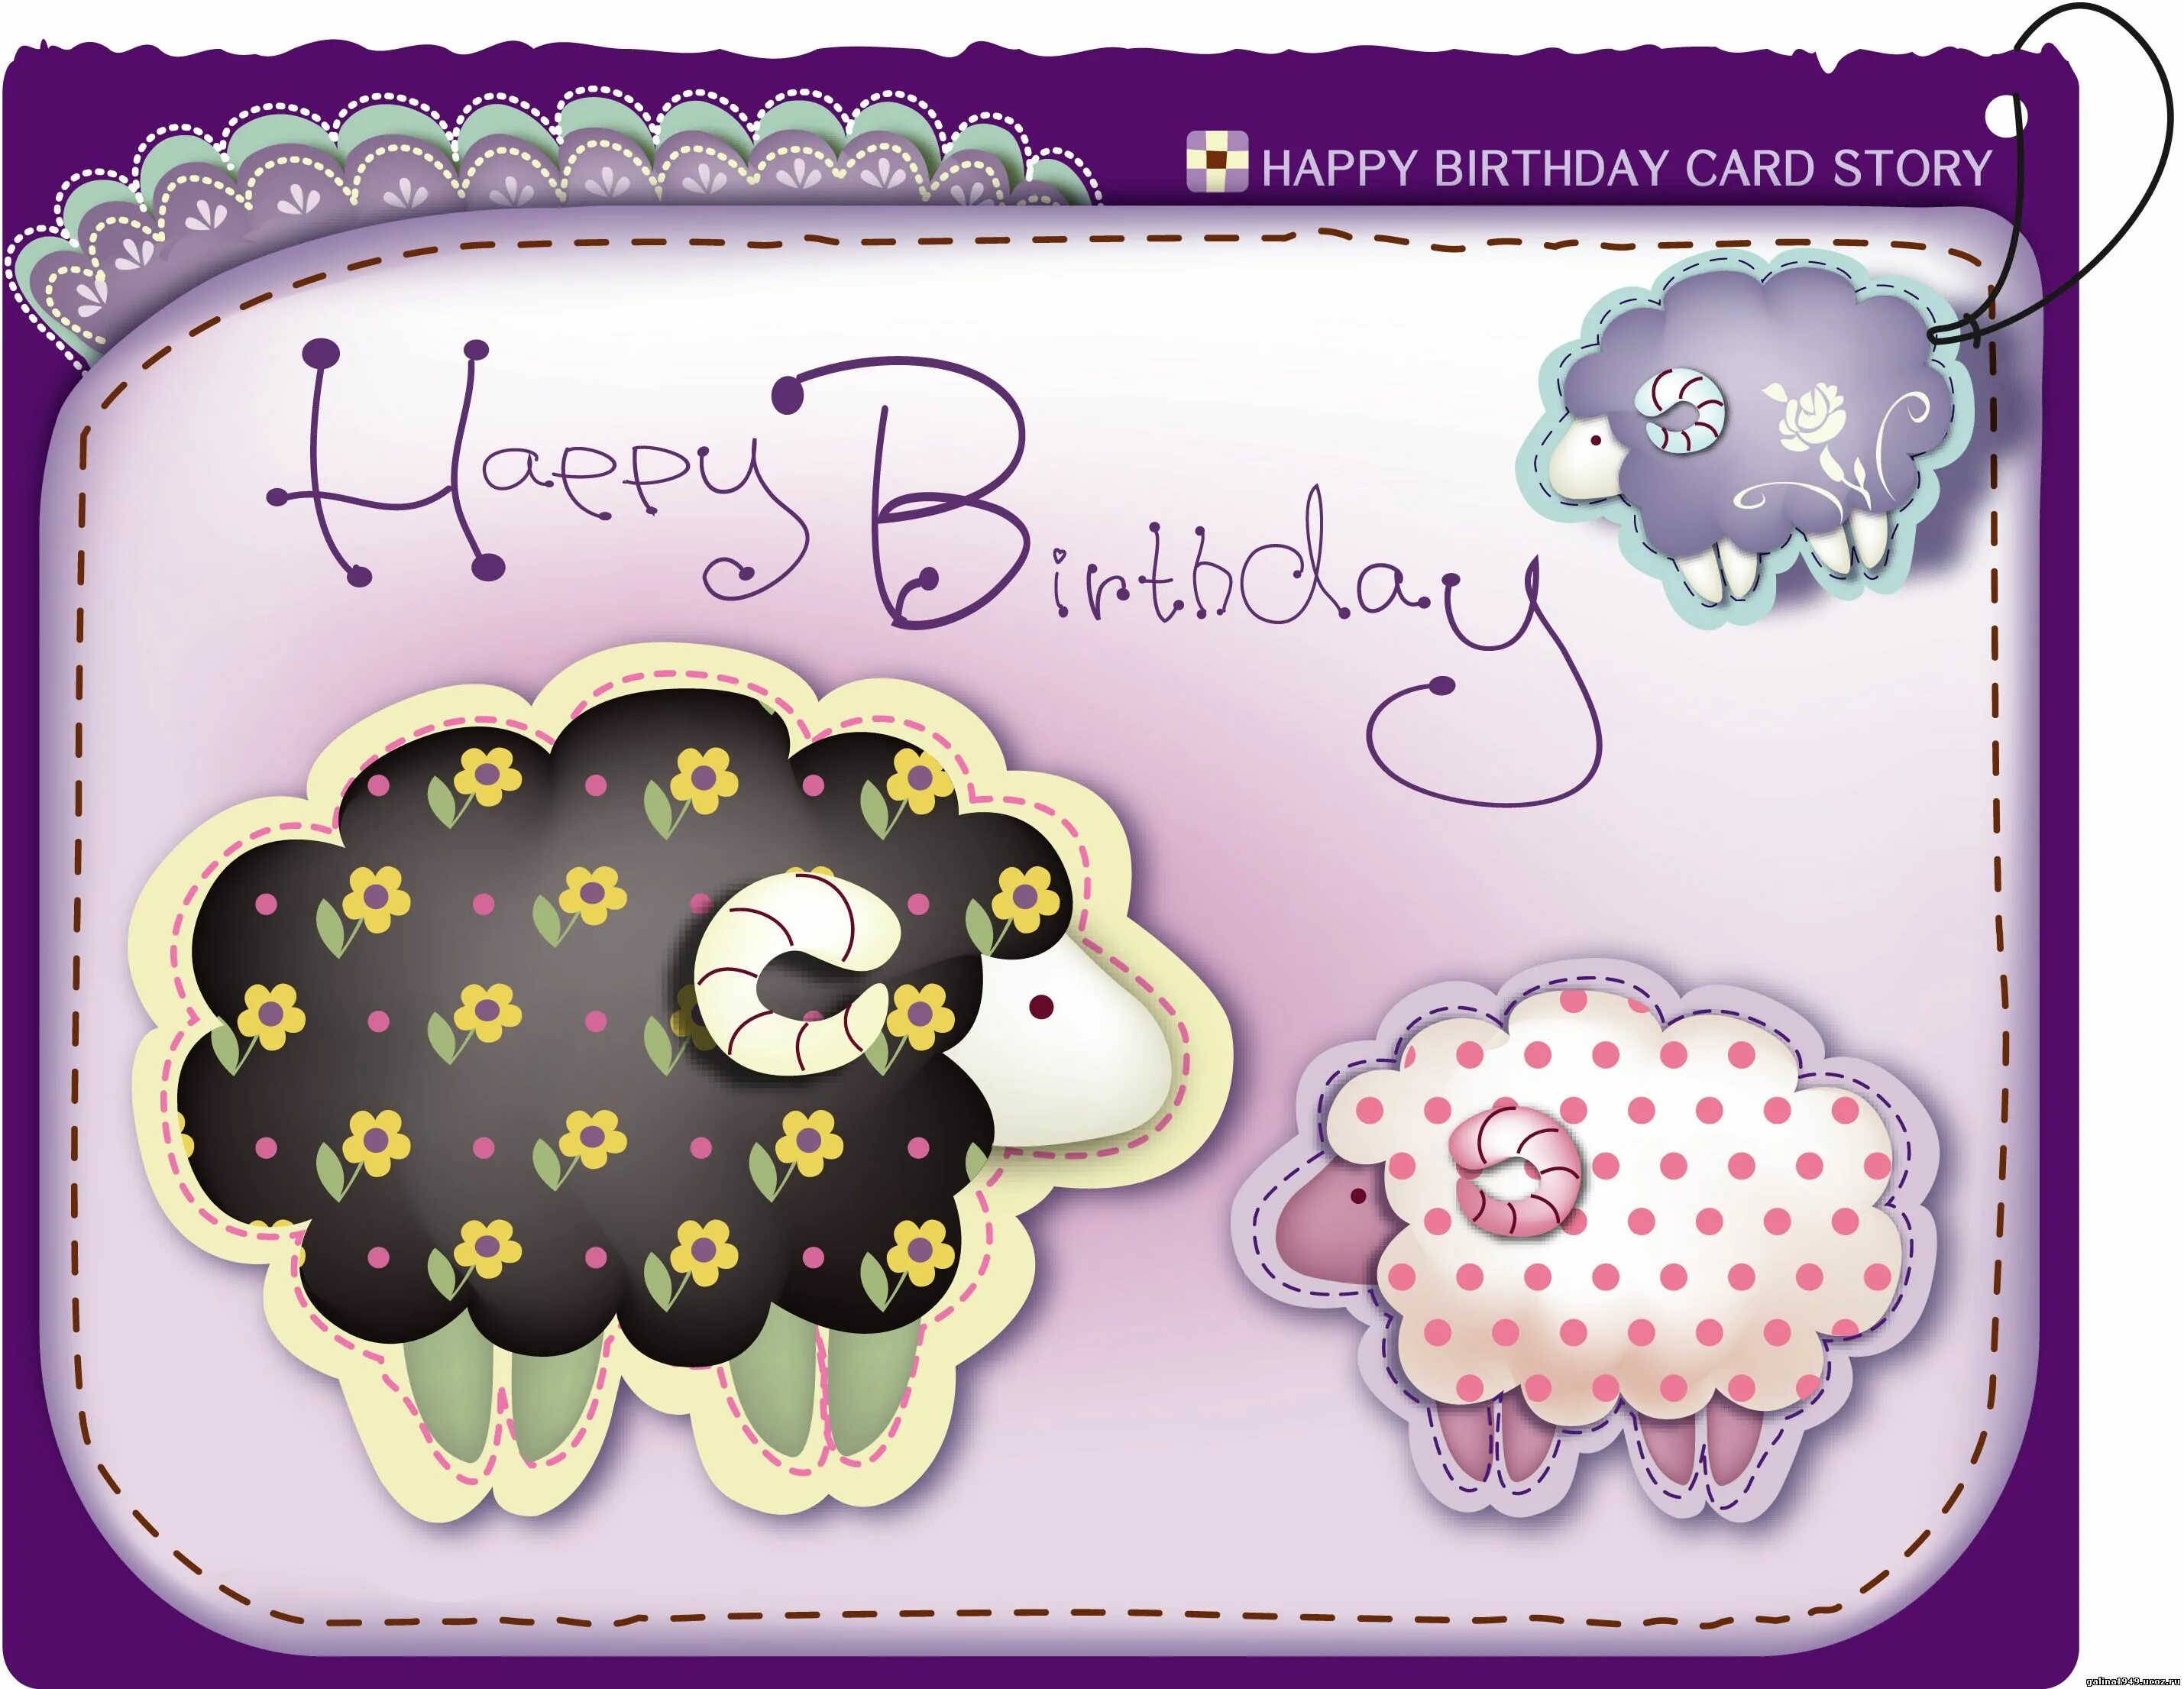 Поздравления овну мужчине. Стильные открытки с днем рождения. Креативные открытки с днем рождения. Карточка с днем рождения. Открытки с овечками с днем рождения.